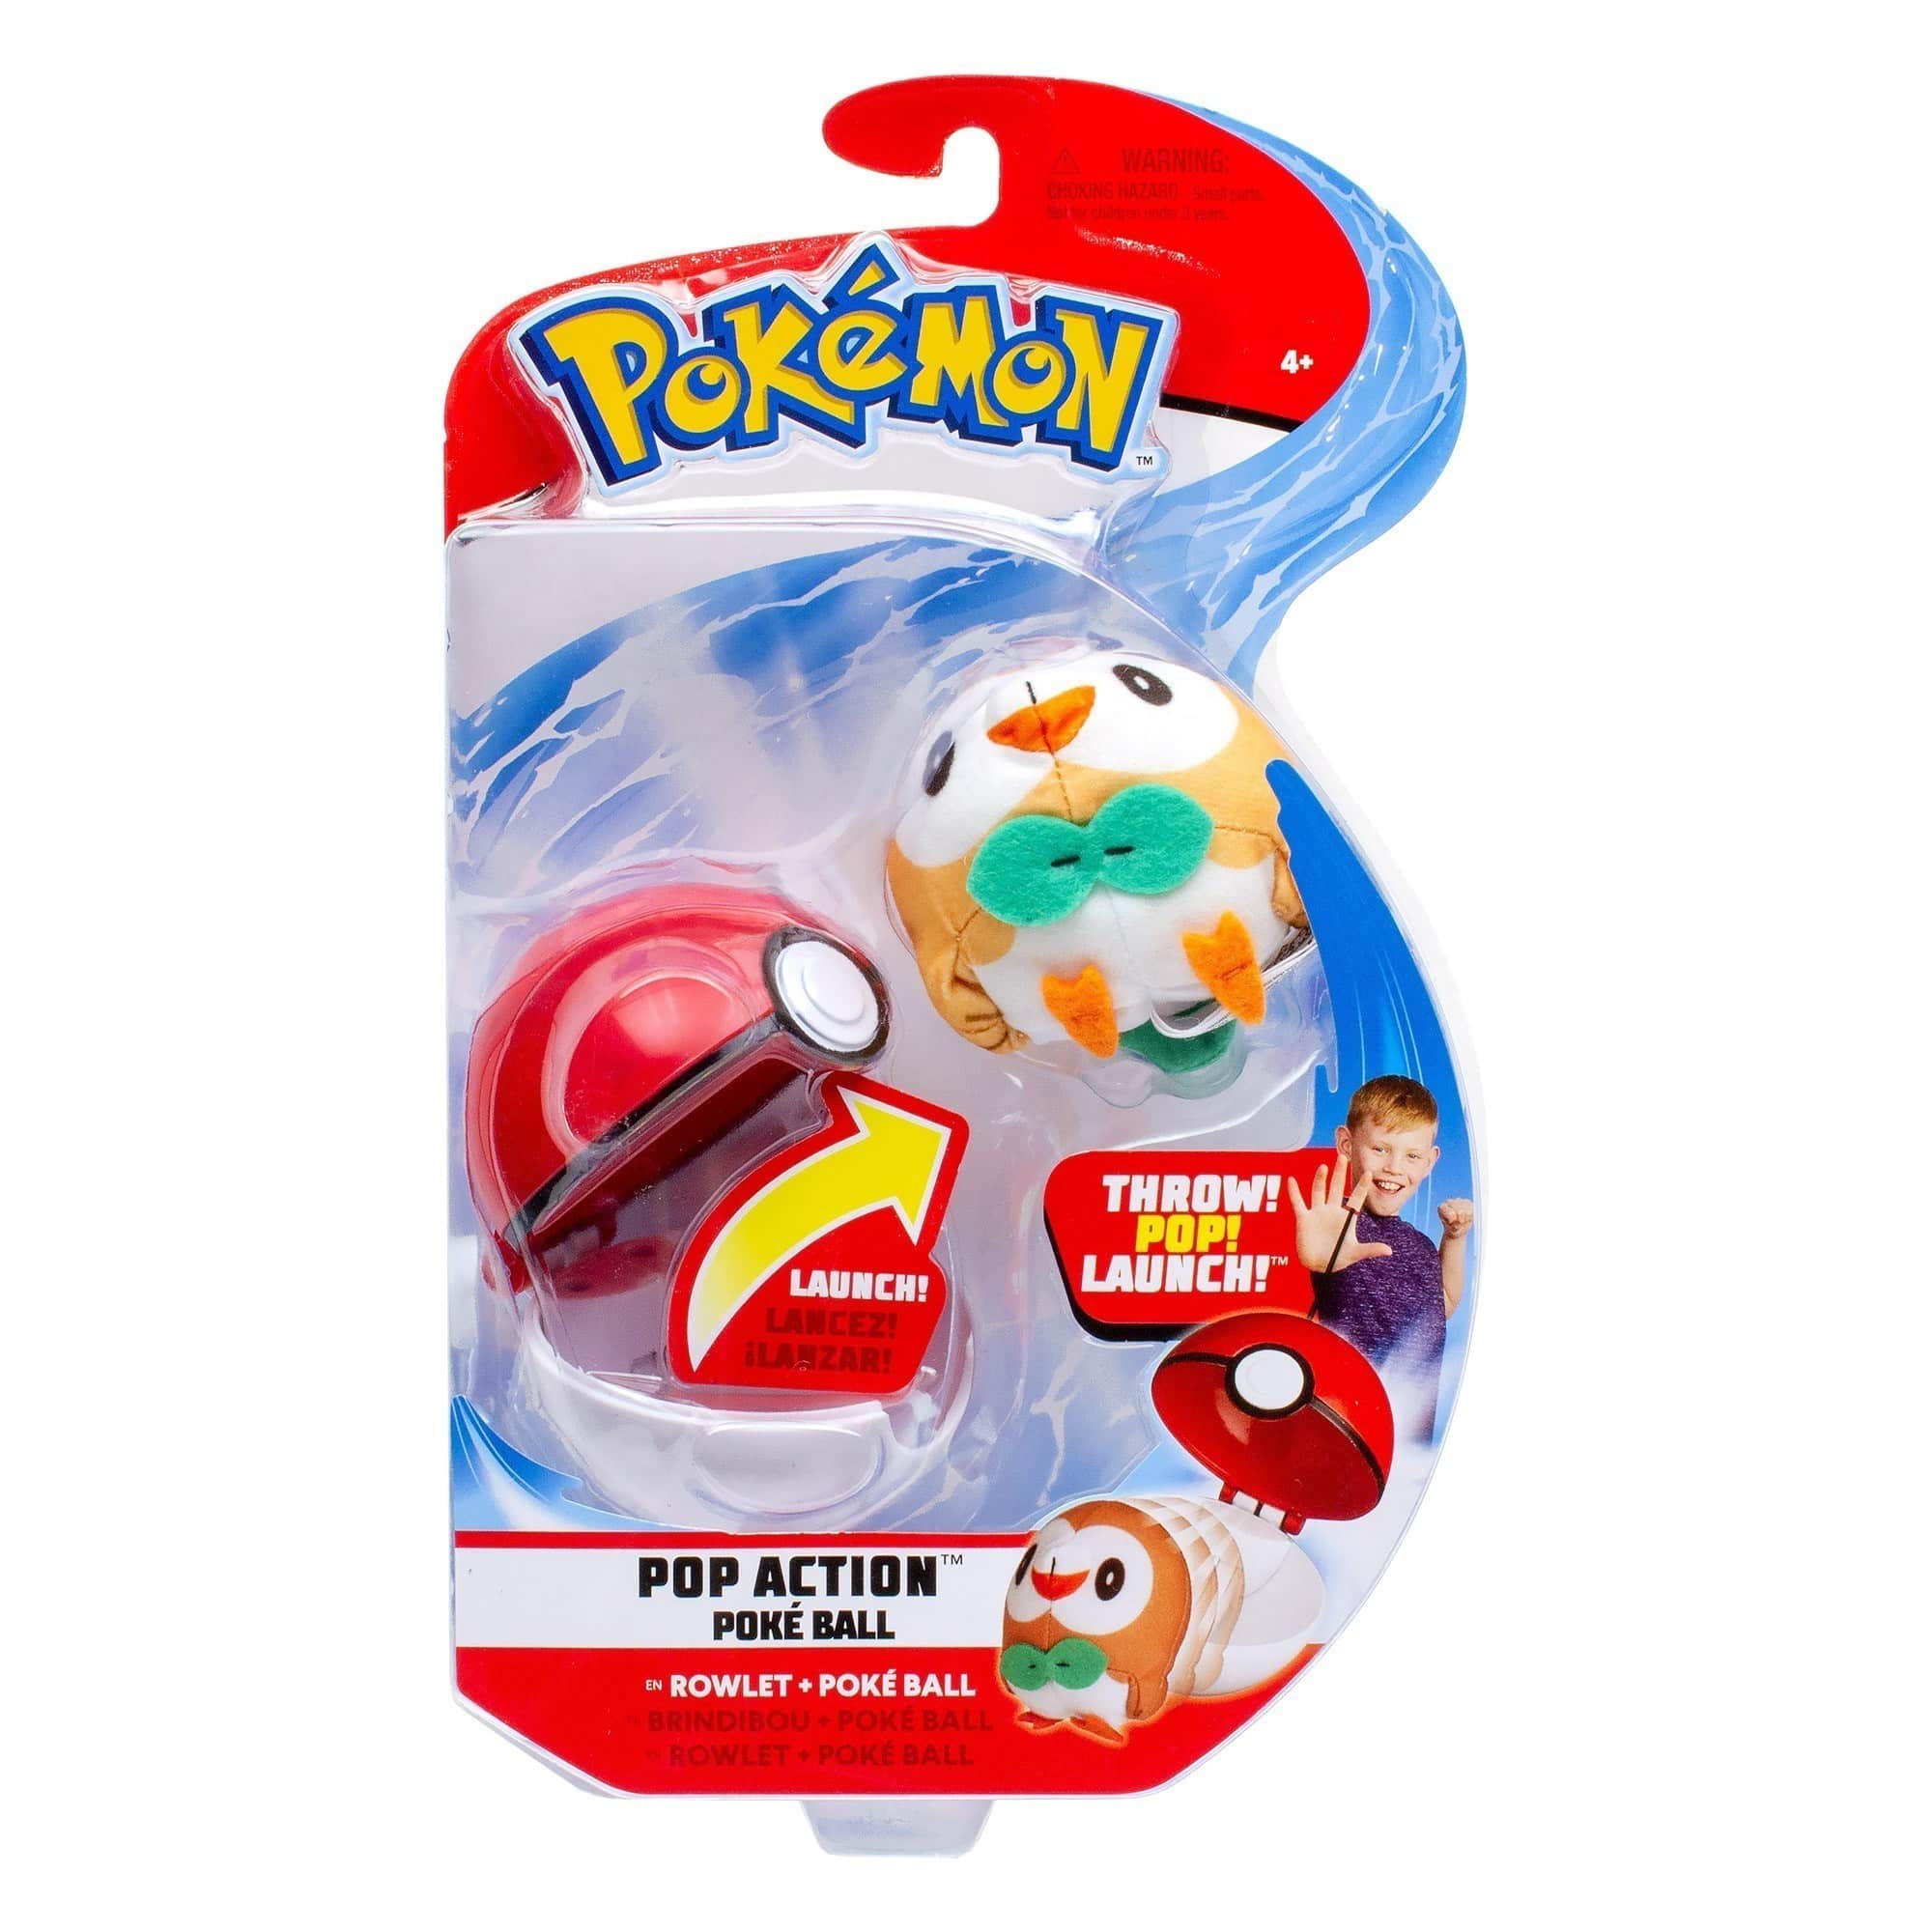 Pokémon - Pop Action Poké Ball - Rowlet Poke Ball